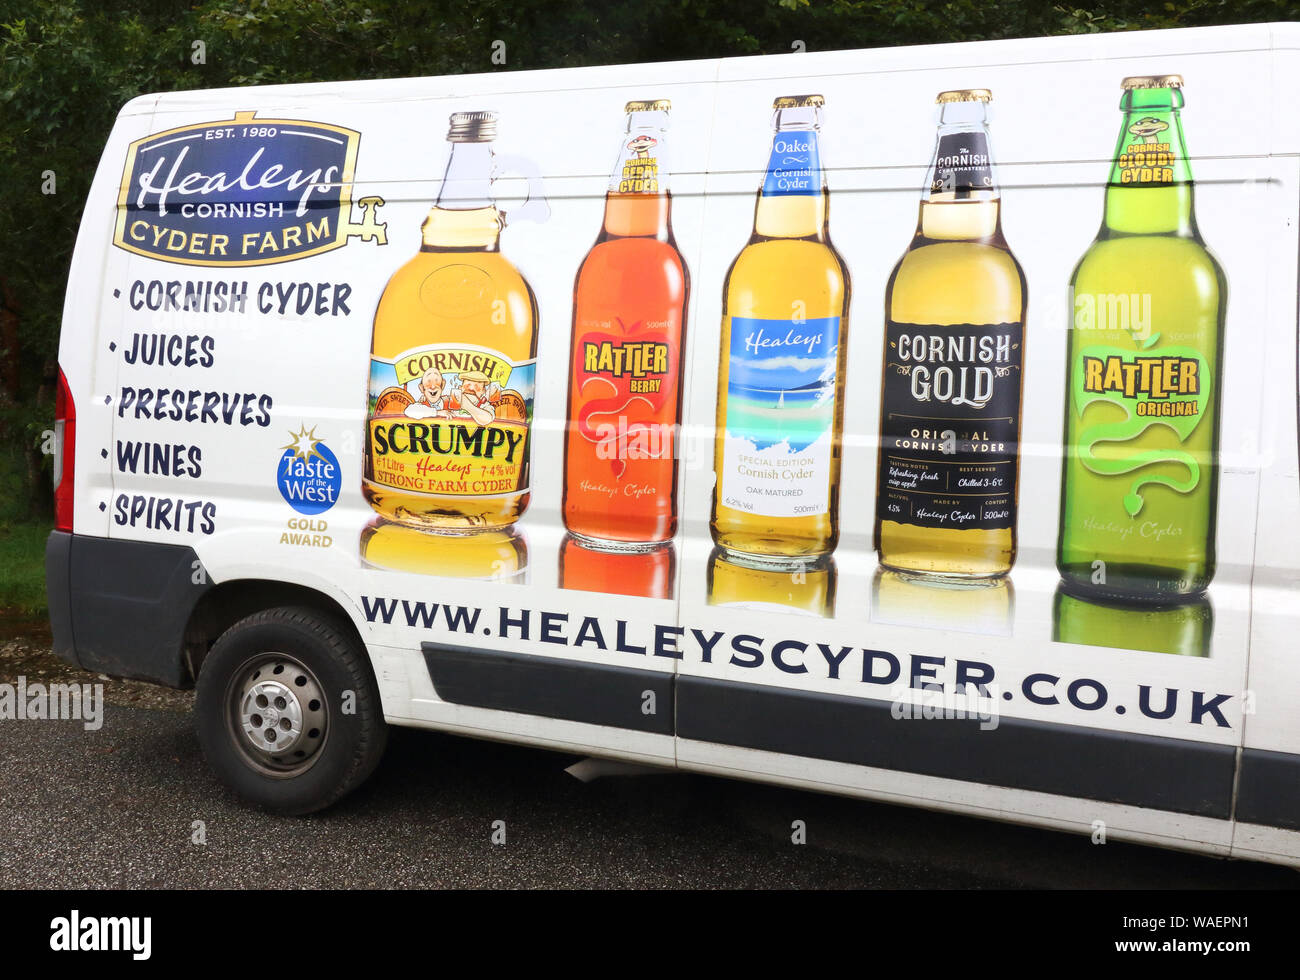 Un van de marque à l'extérieur de l'Cyder Farm à Penhallow.Healey's Cornish Cyder Farm est une entreprise familiale indépendante à Penhallow, UK. Elle brasse et distribue ses propres cyder, brandy, whisky, vins de fruits du pays et le jus de pomme, tous produits sur place. Sa principale marque cyder Rattler est disponible dans les deux variétés de poires et nuageux. Banque D'Images